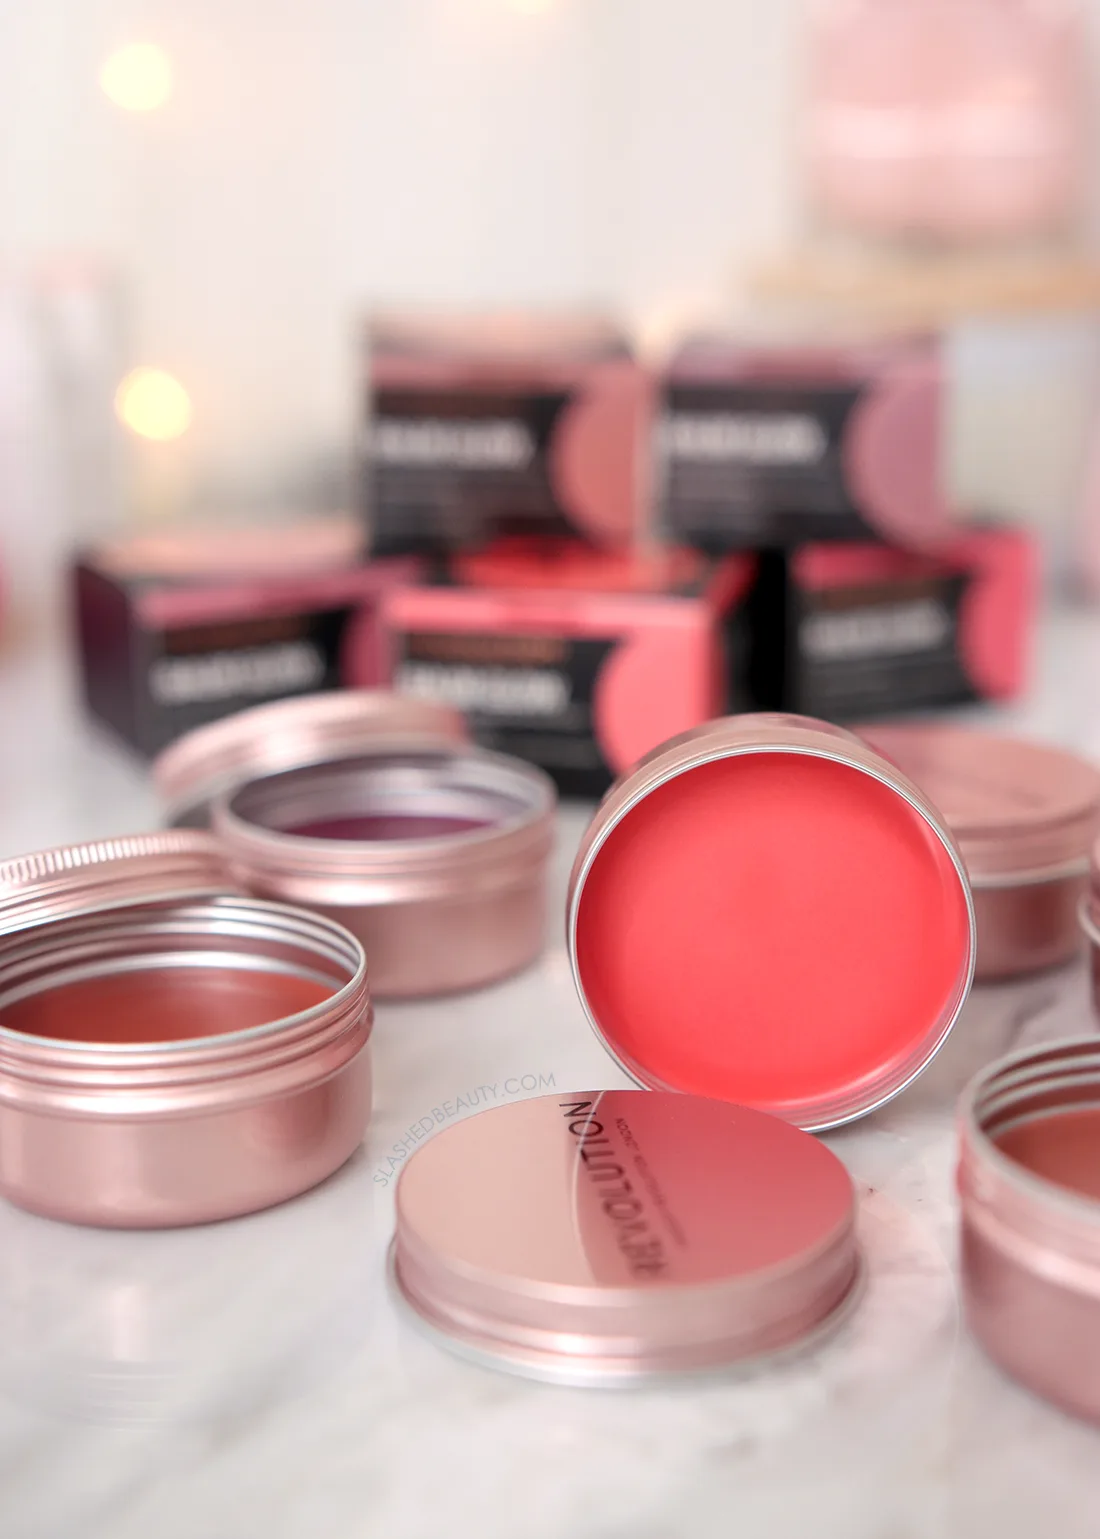 New Makeup Multitasker: Makeup Revolution Balm Glow
Review